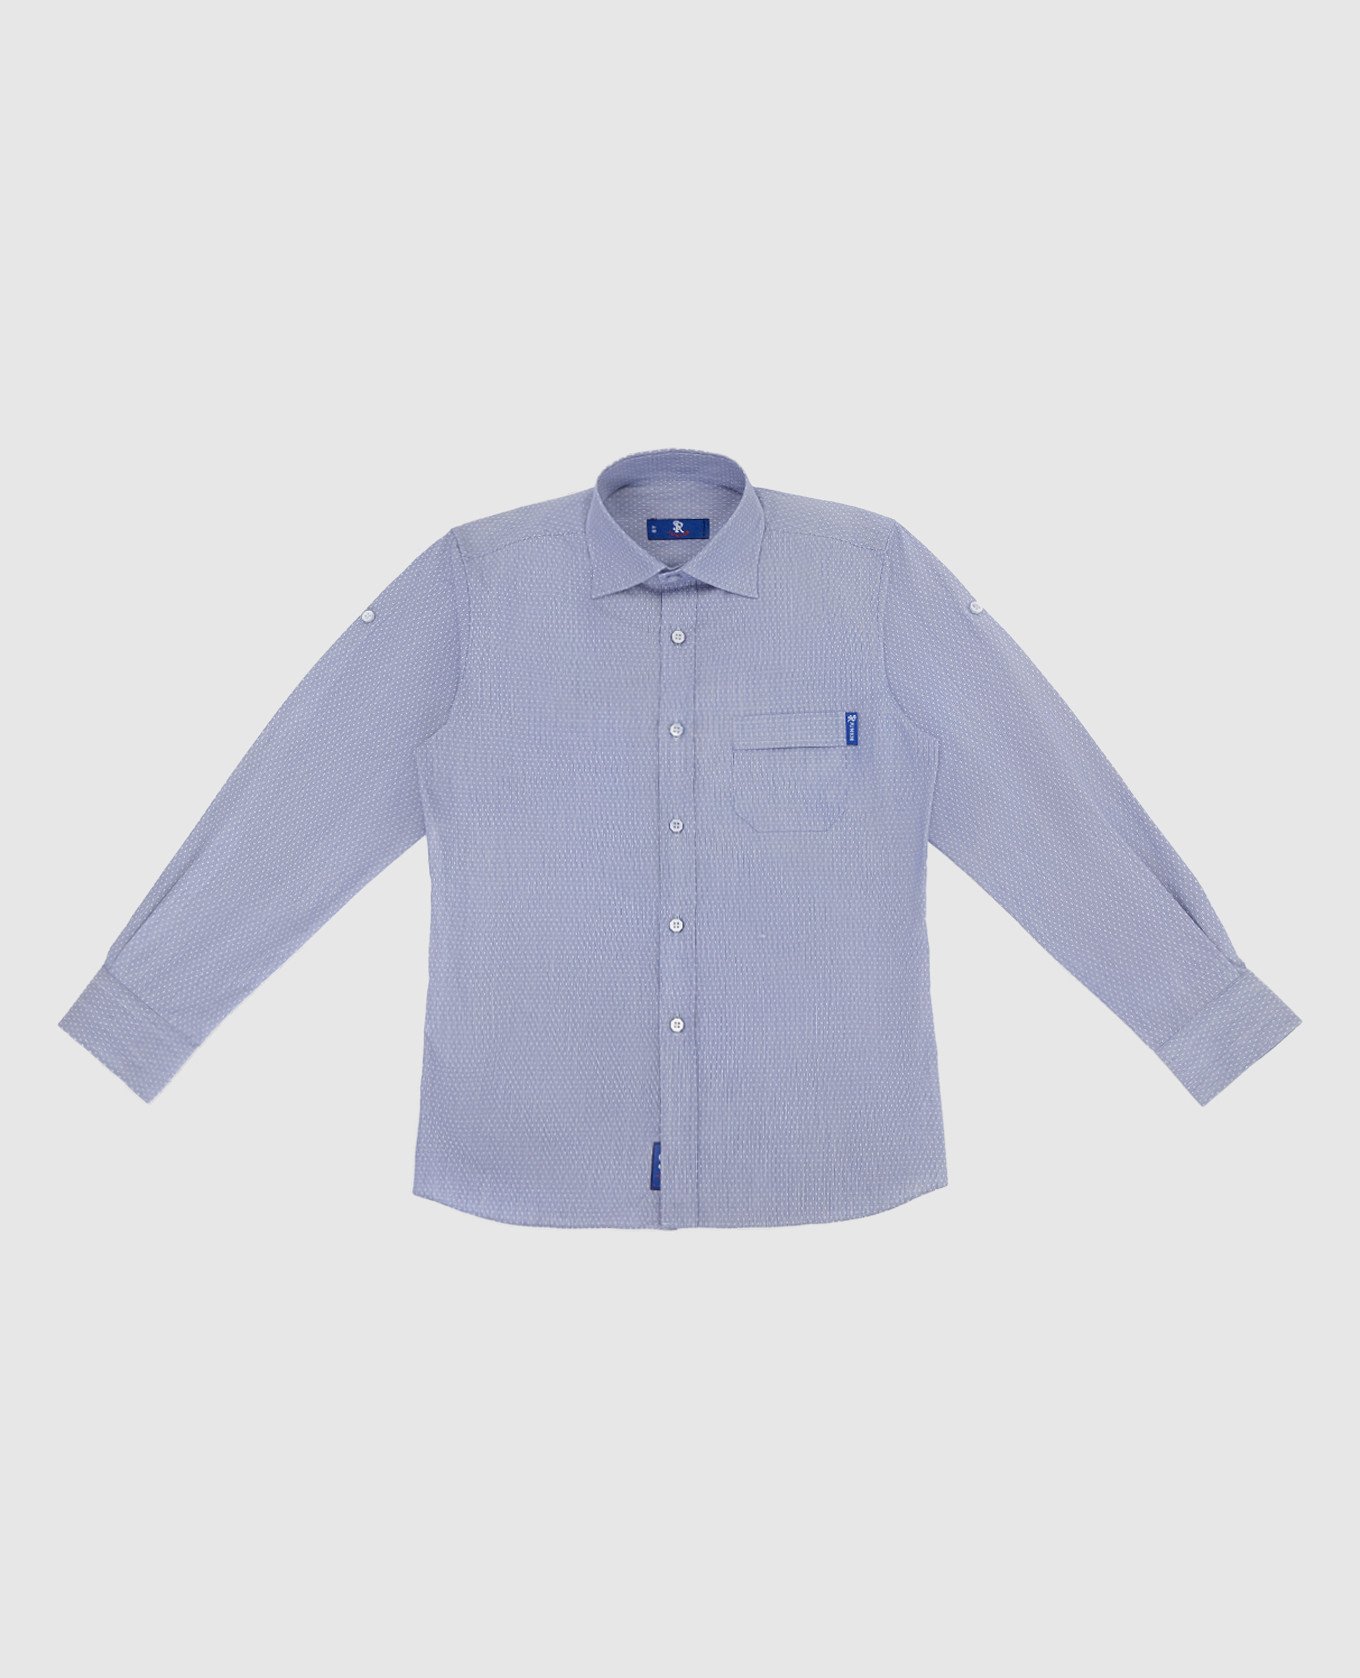 Children's light blue shirt in a pattern